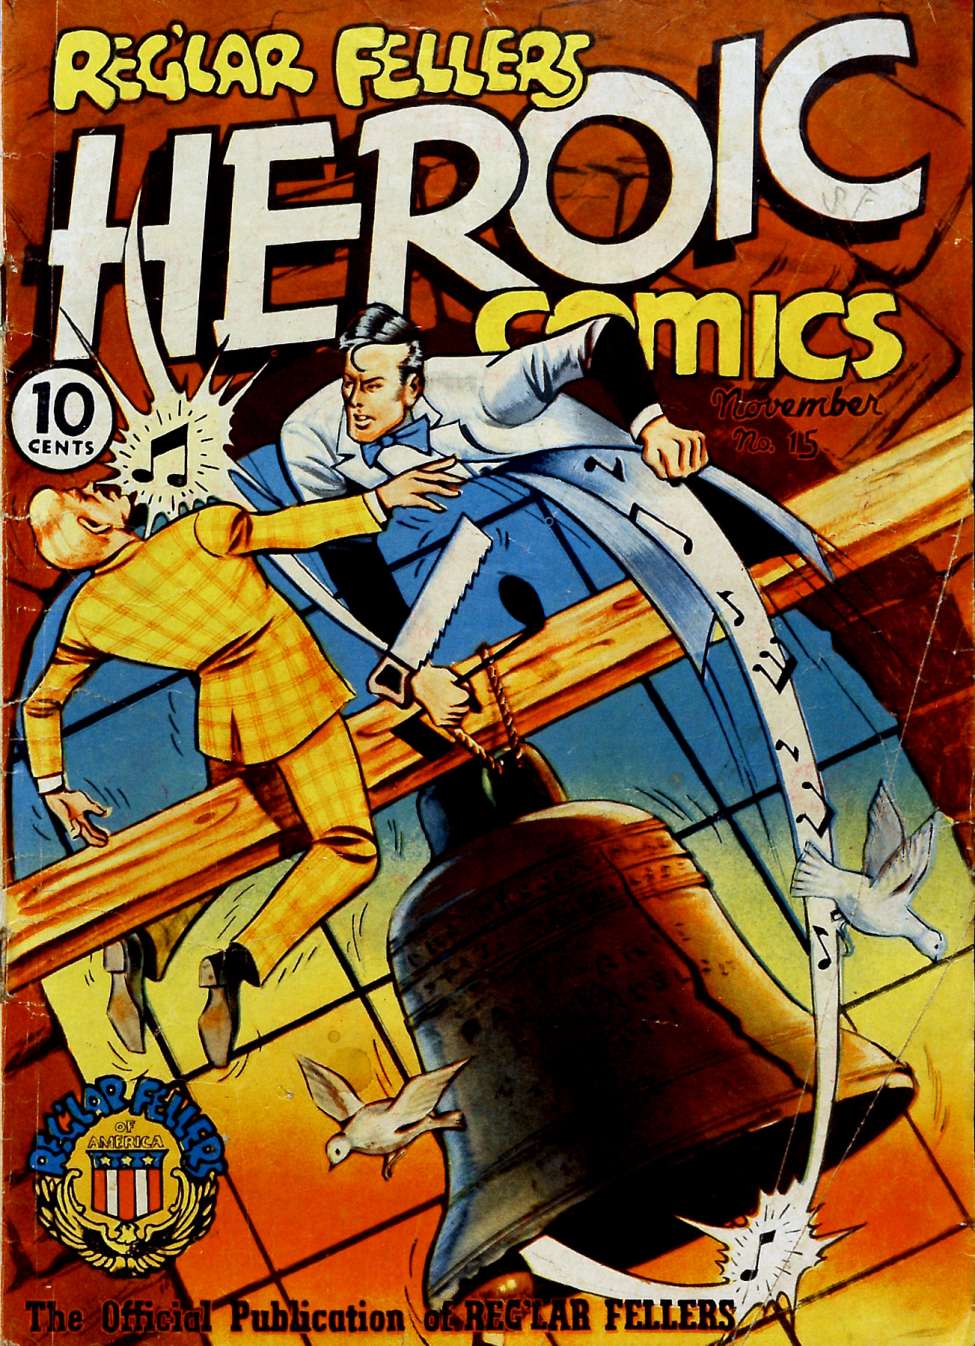 Book Cover For Reg'lar Fellers Heroic Comics 15